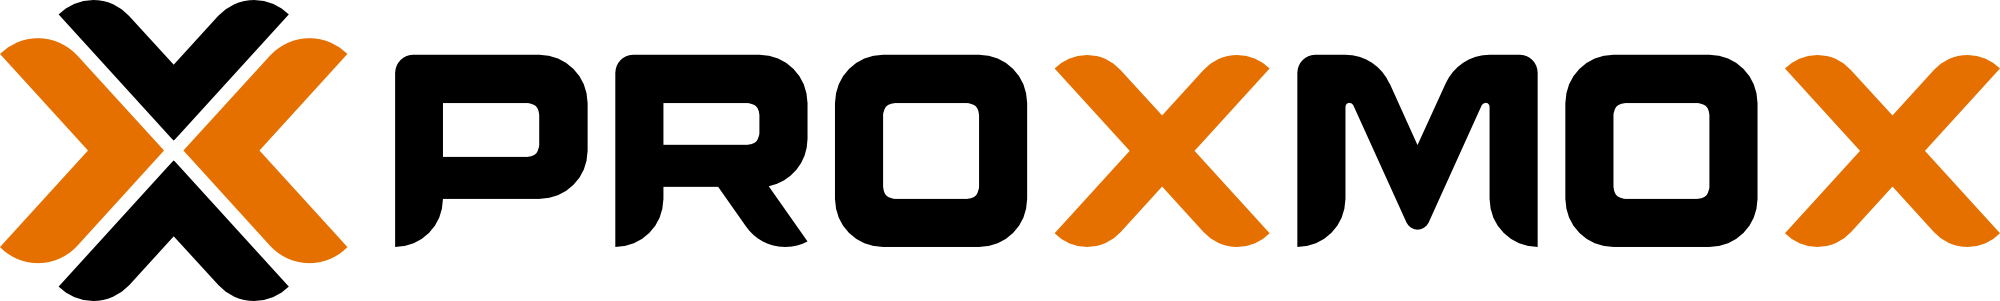 Proxmox GmbH